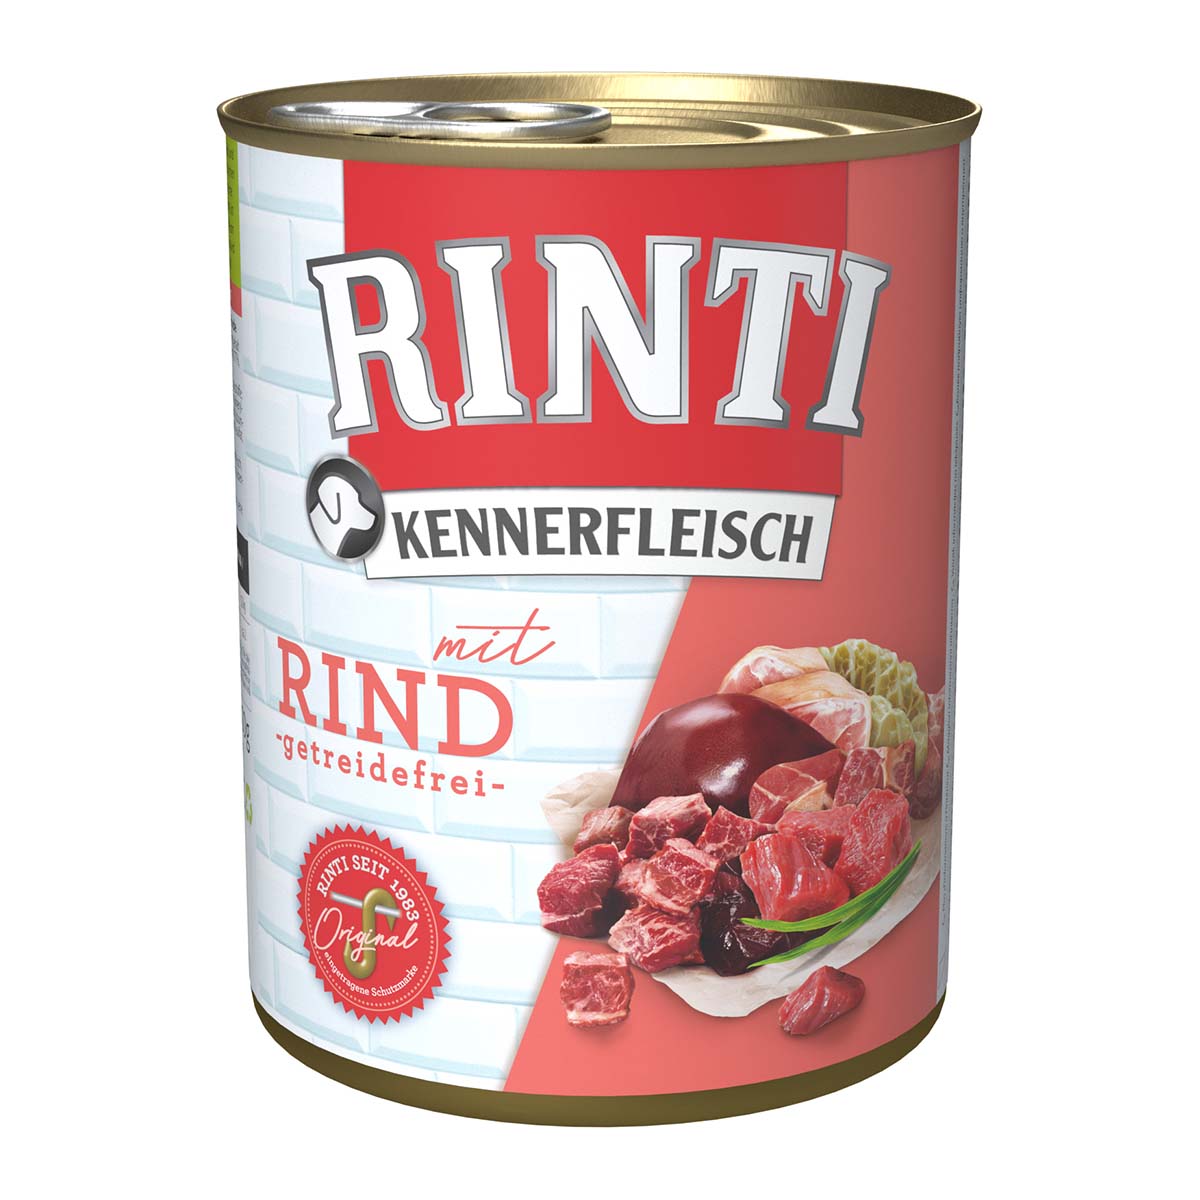 Rinti Kennerfleisch mit Rind 12x800g